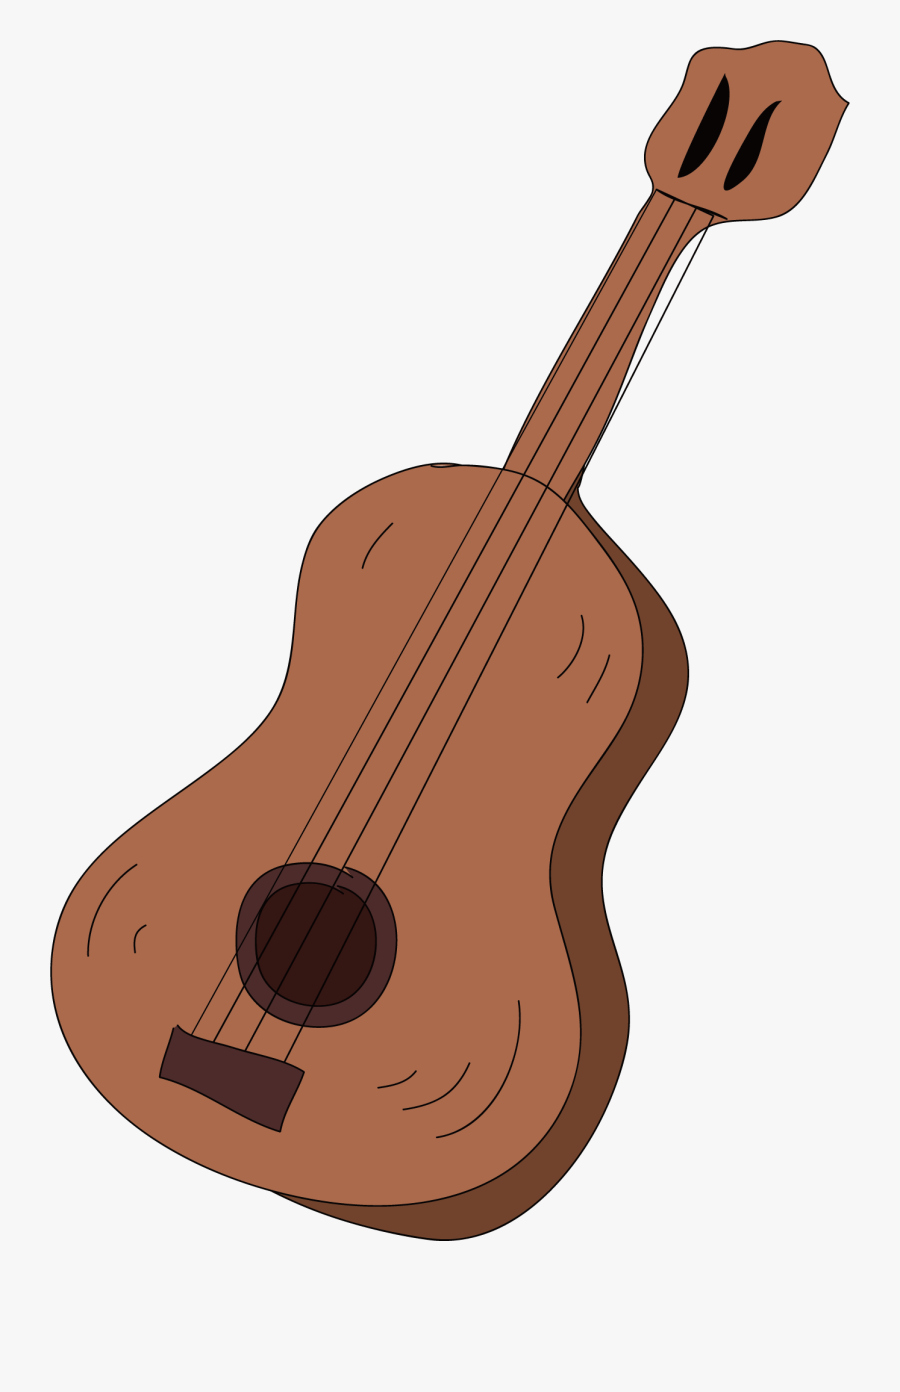 Ukulele Clipart Brown Guitar - Acoustic Guitar, Transparent Clipart